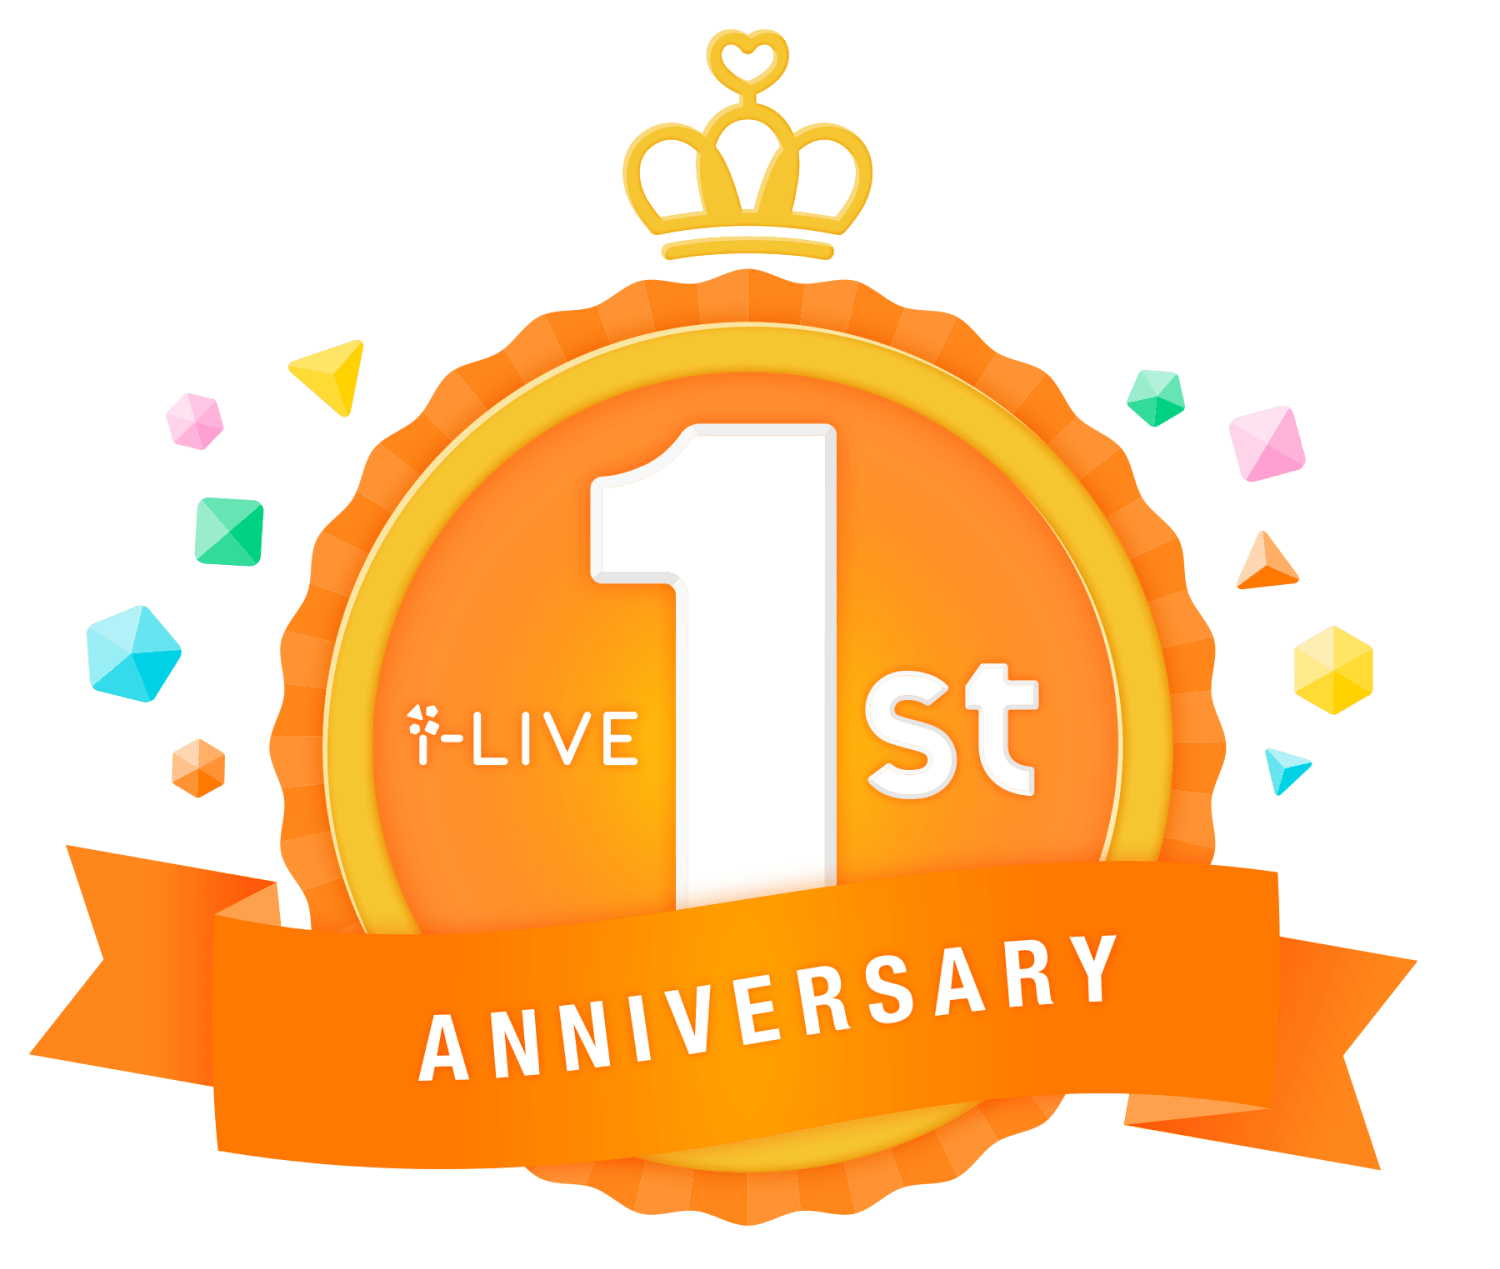 i-Live 1st Anniversary